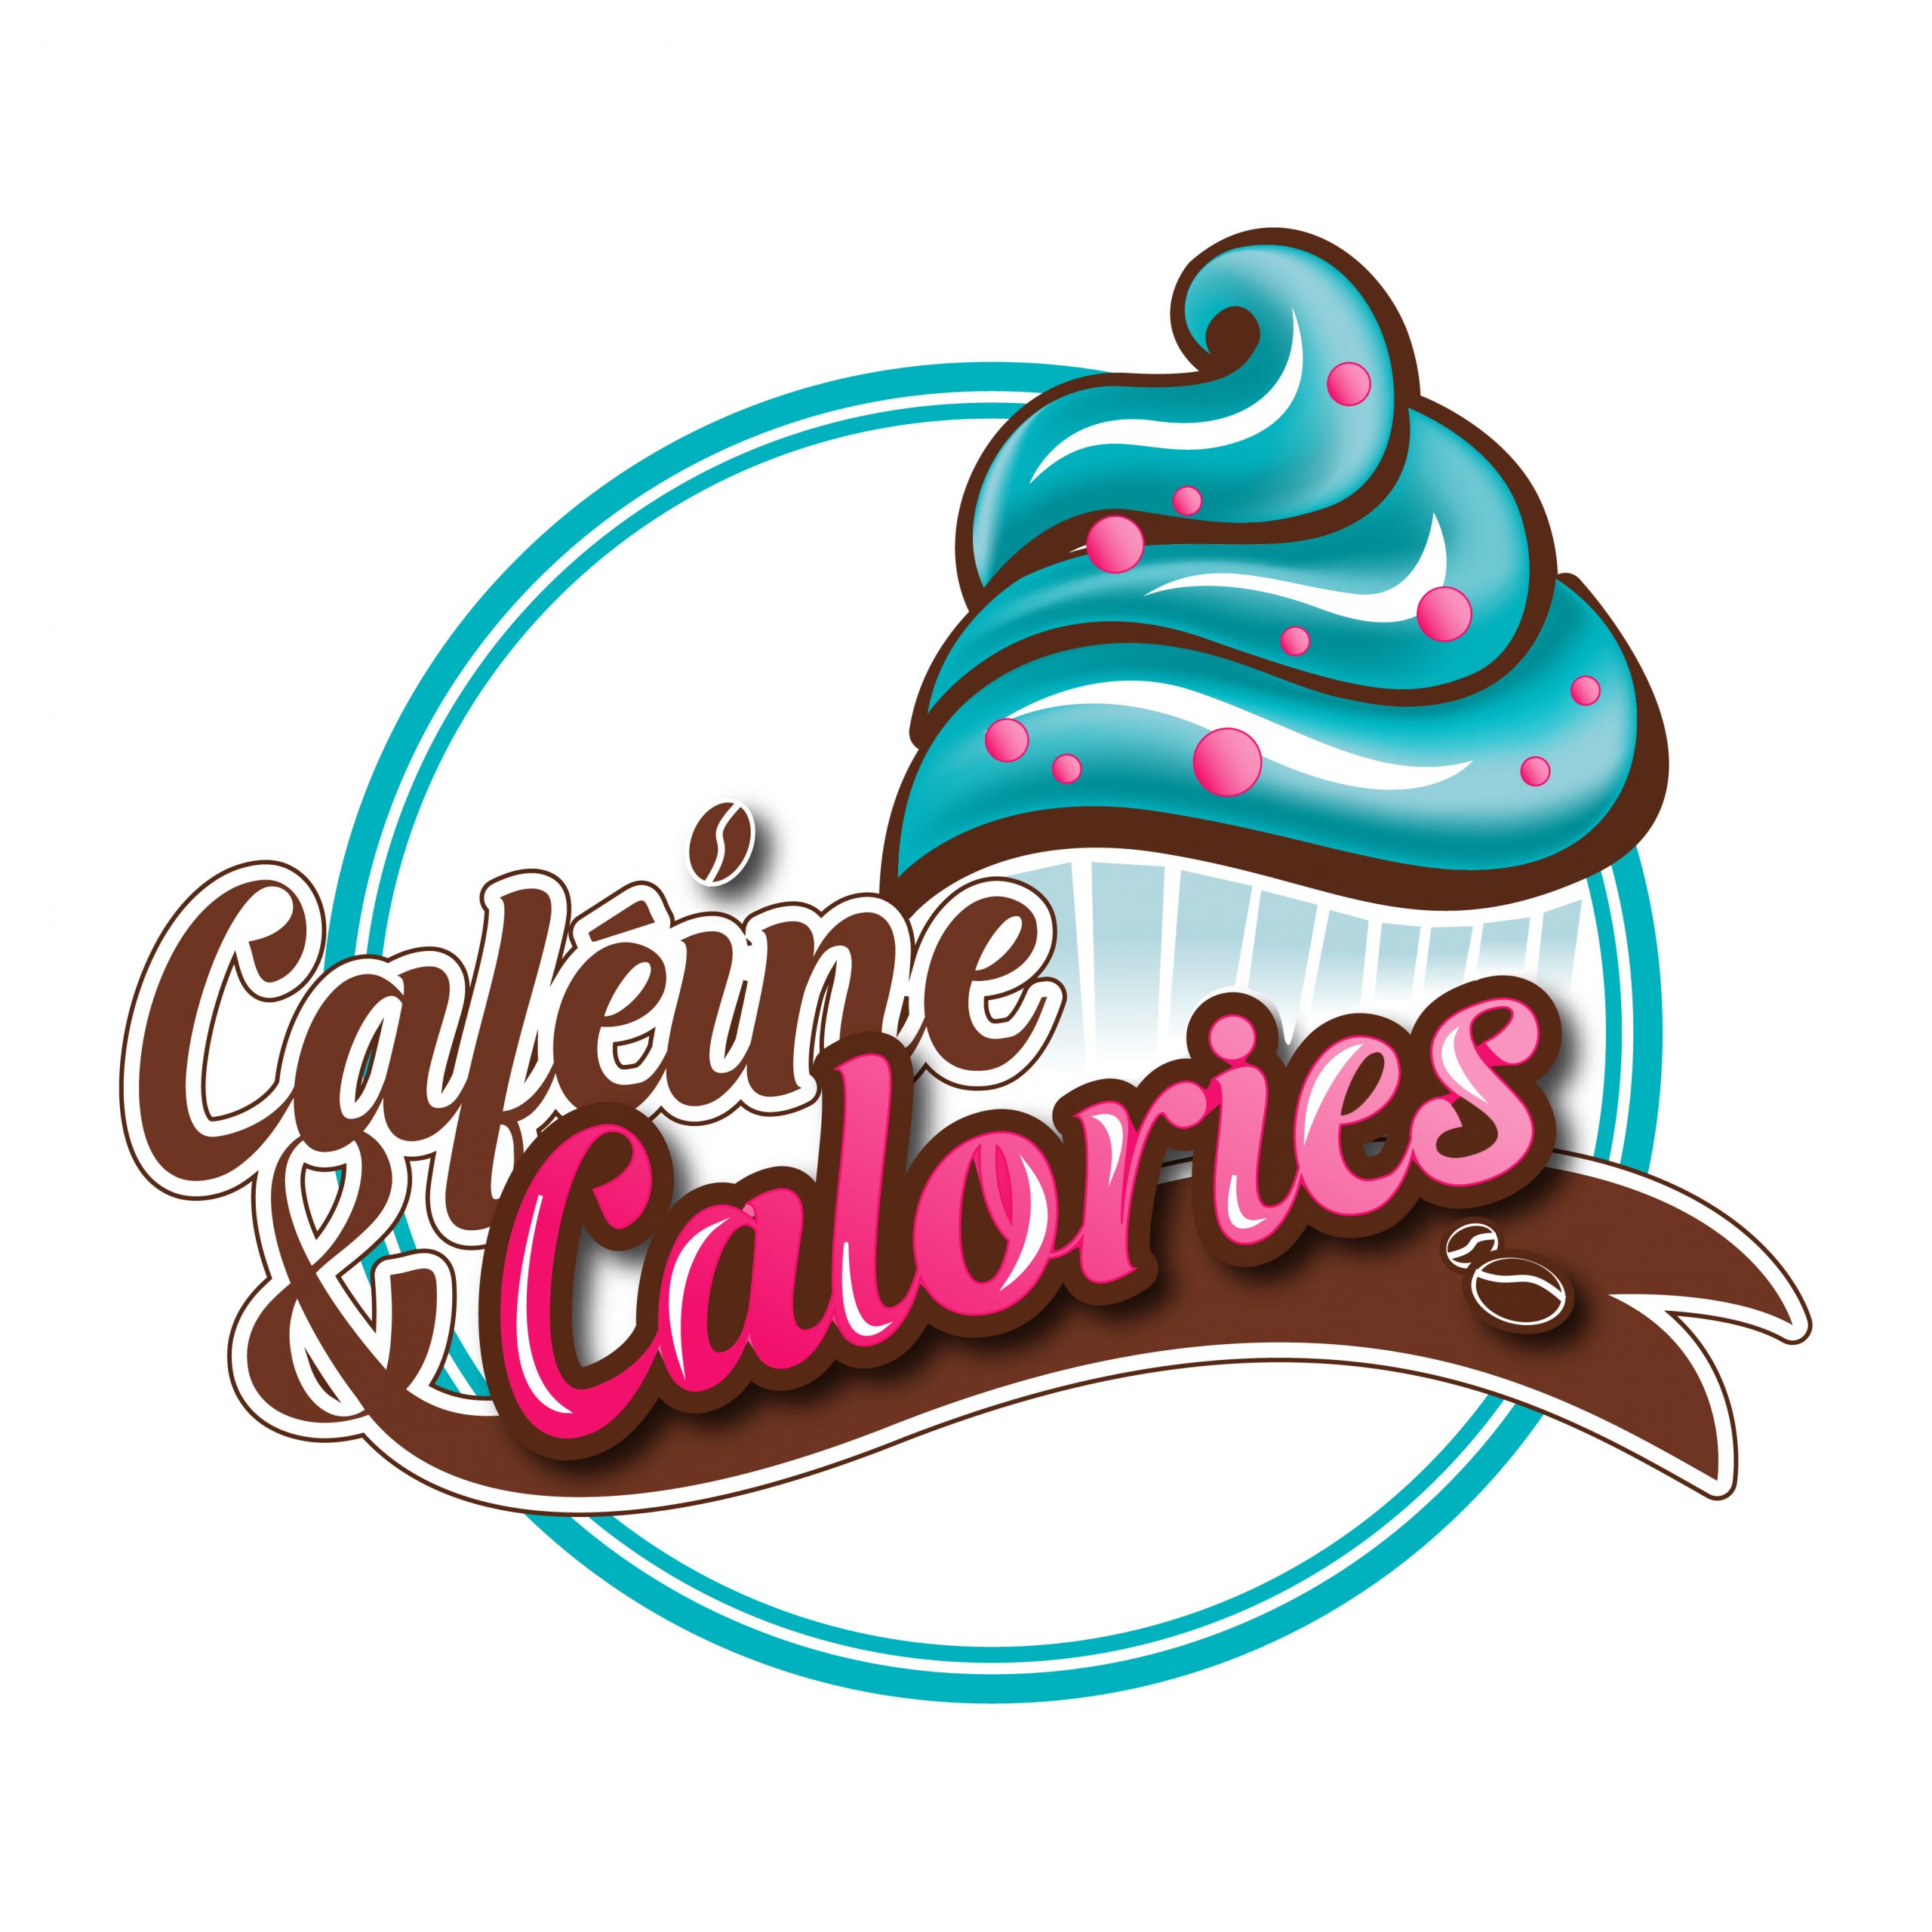 Caféine et Calories S.E.N.C.